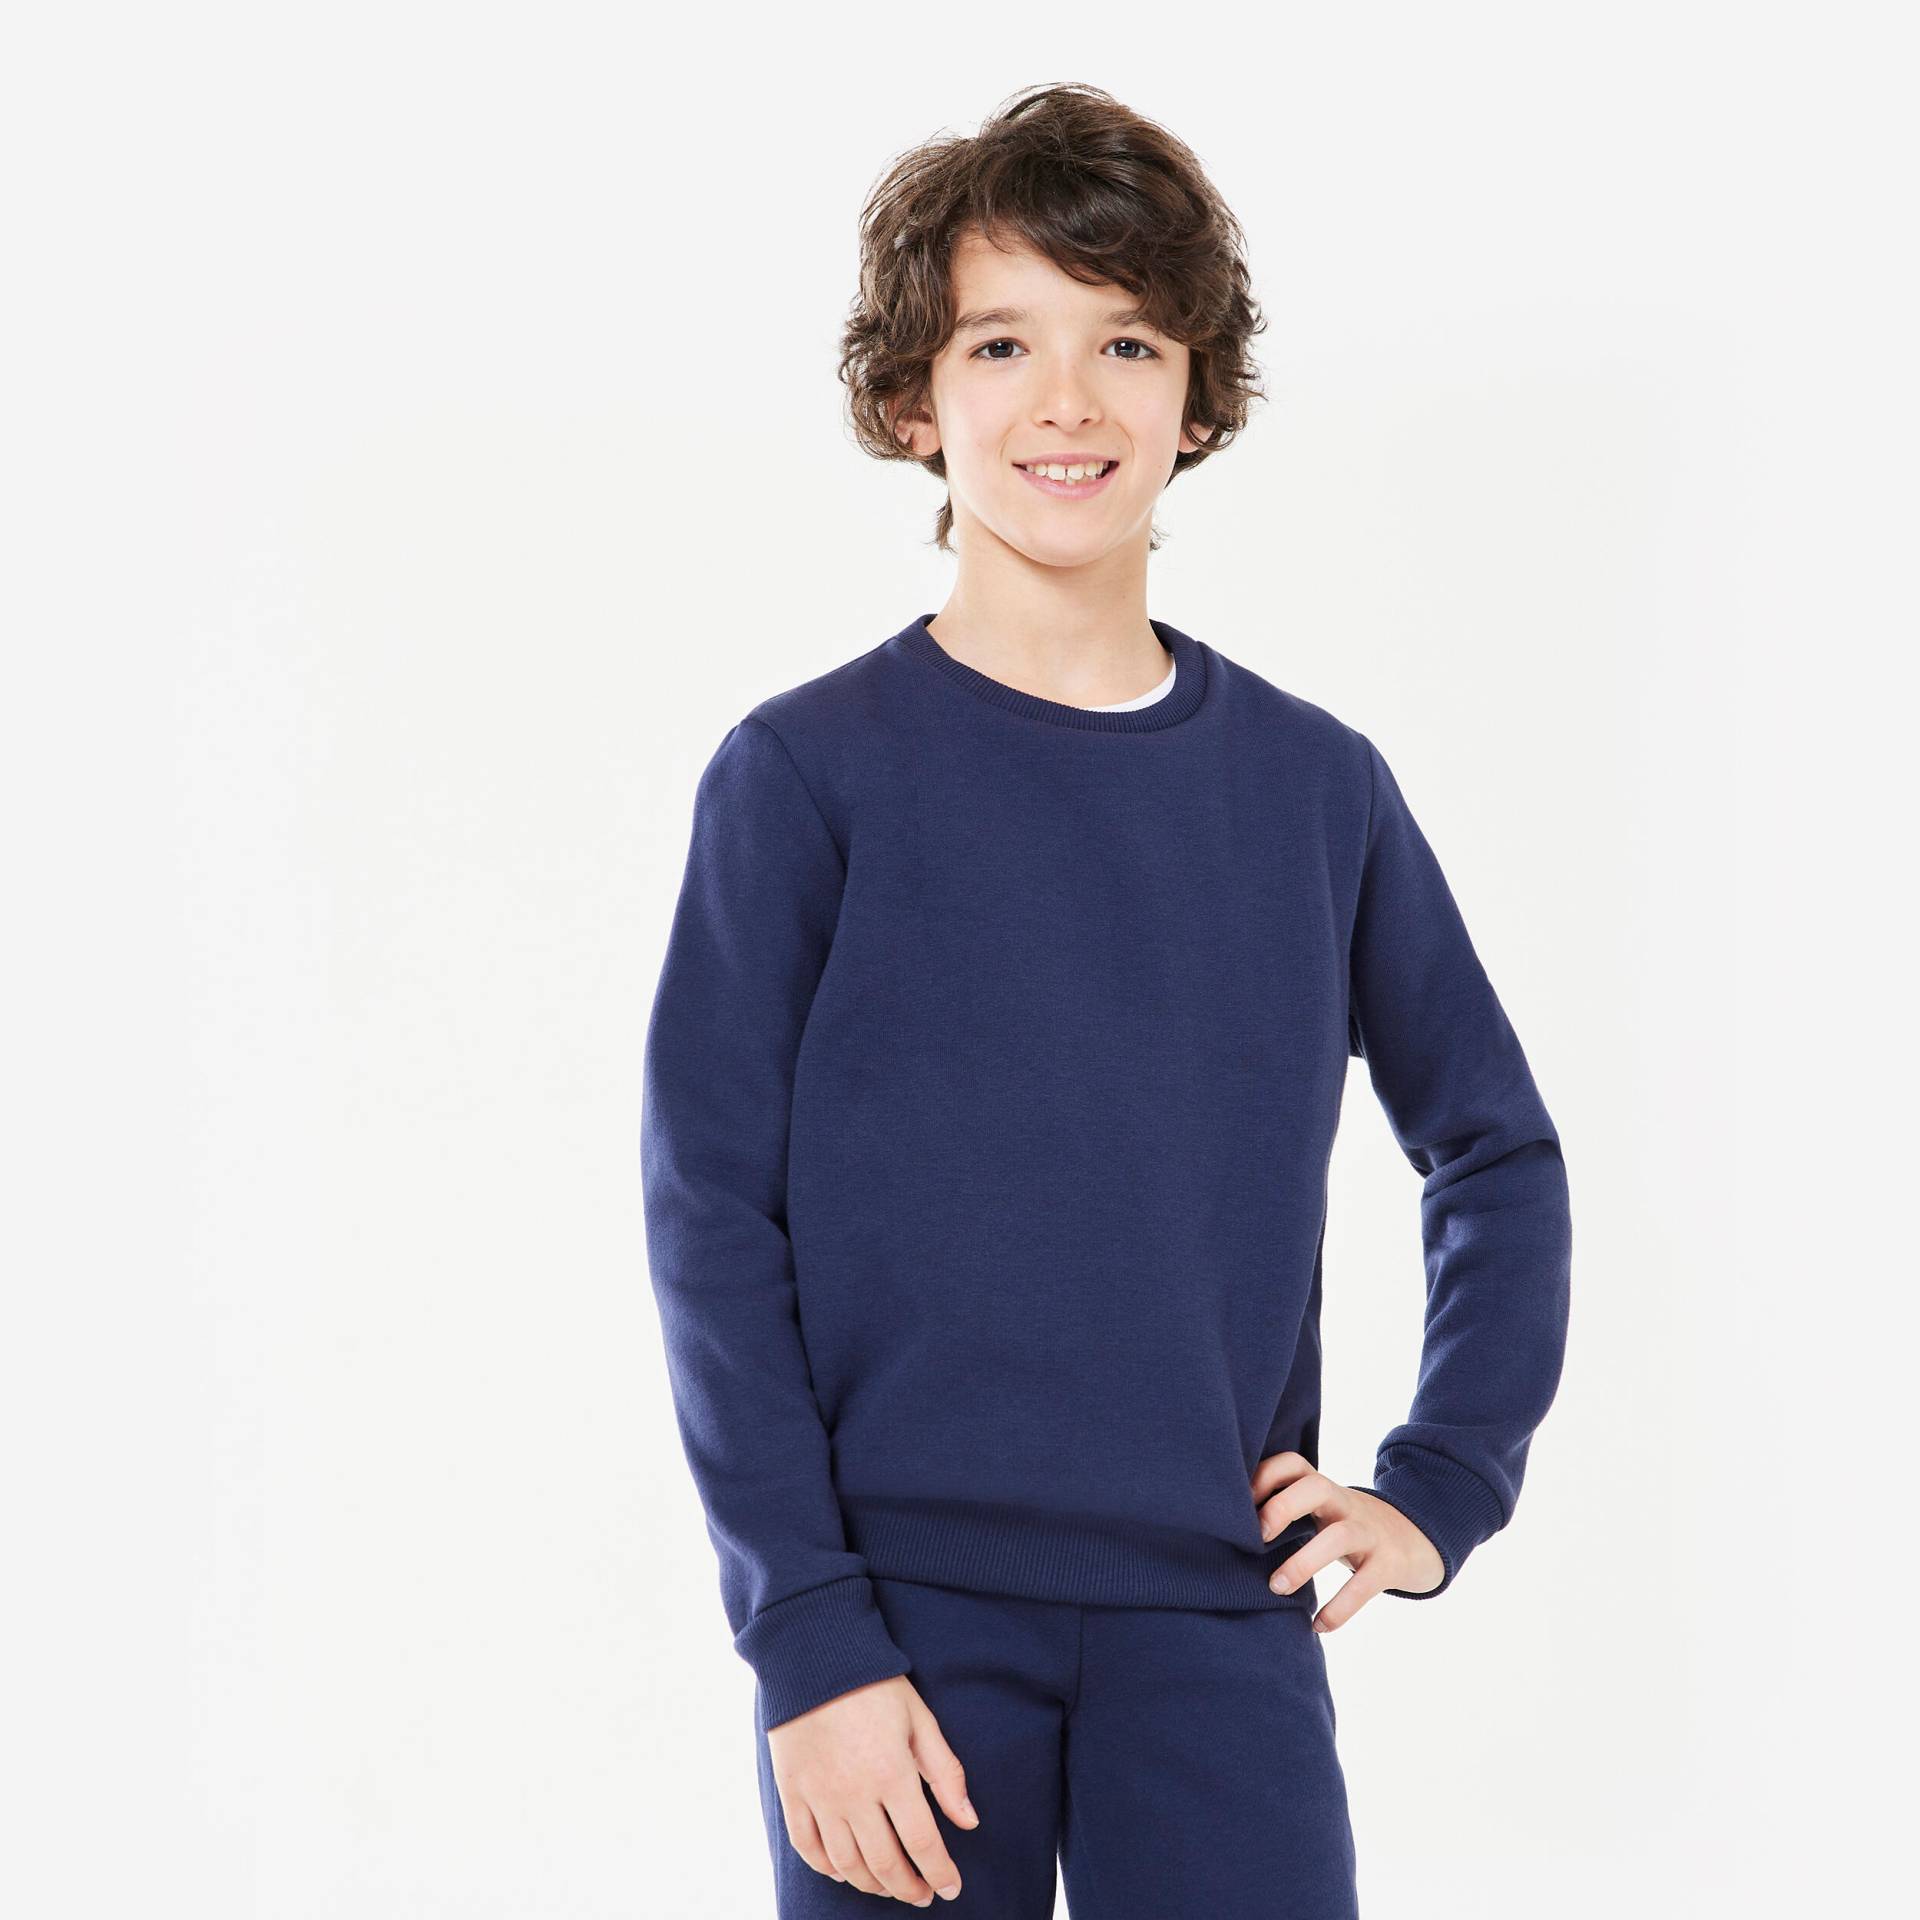 Sweatshirt Kinder Unisex Rundhals warm - marineblau von Domyos